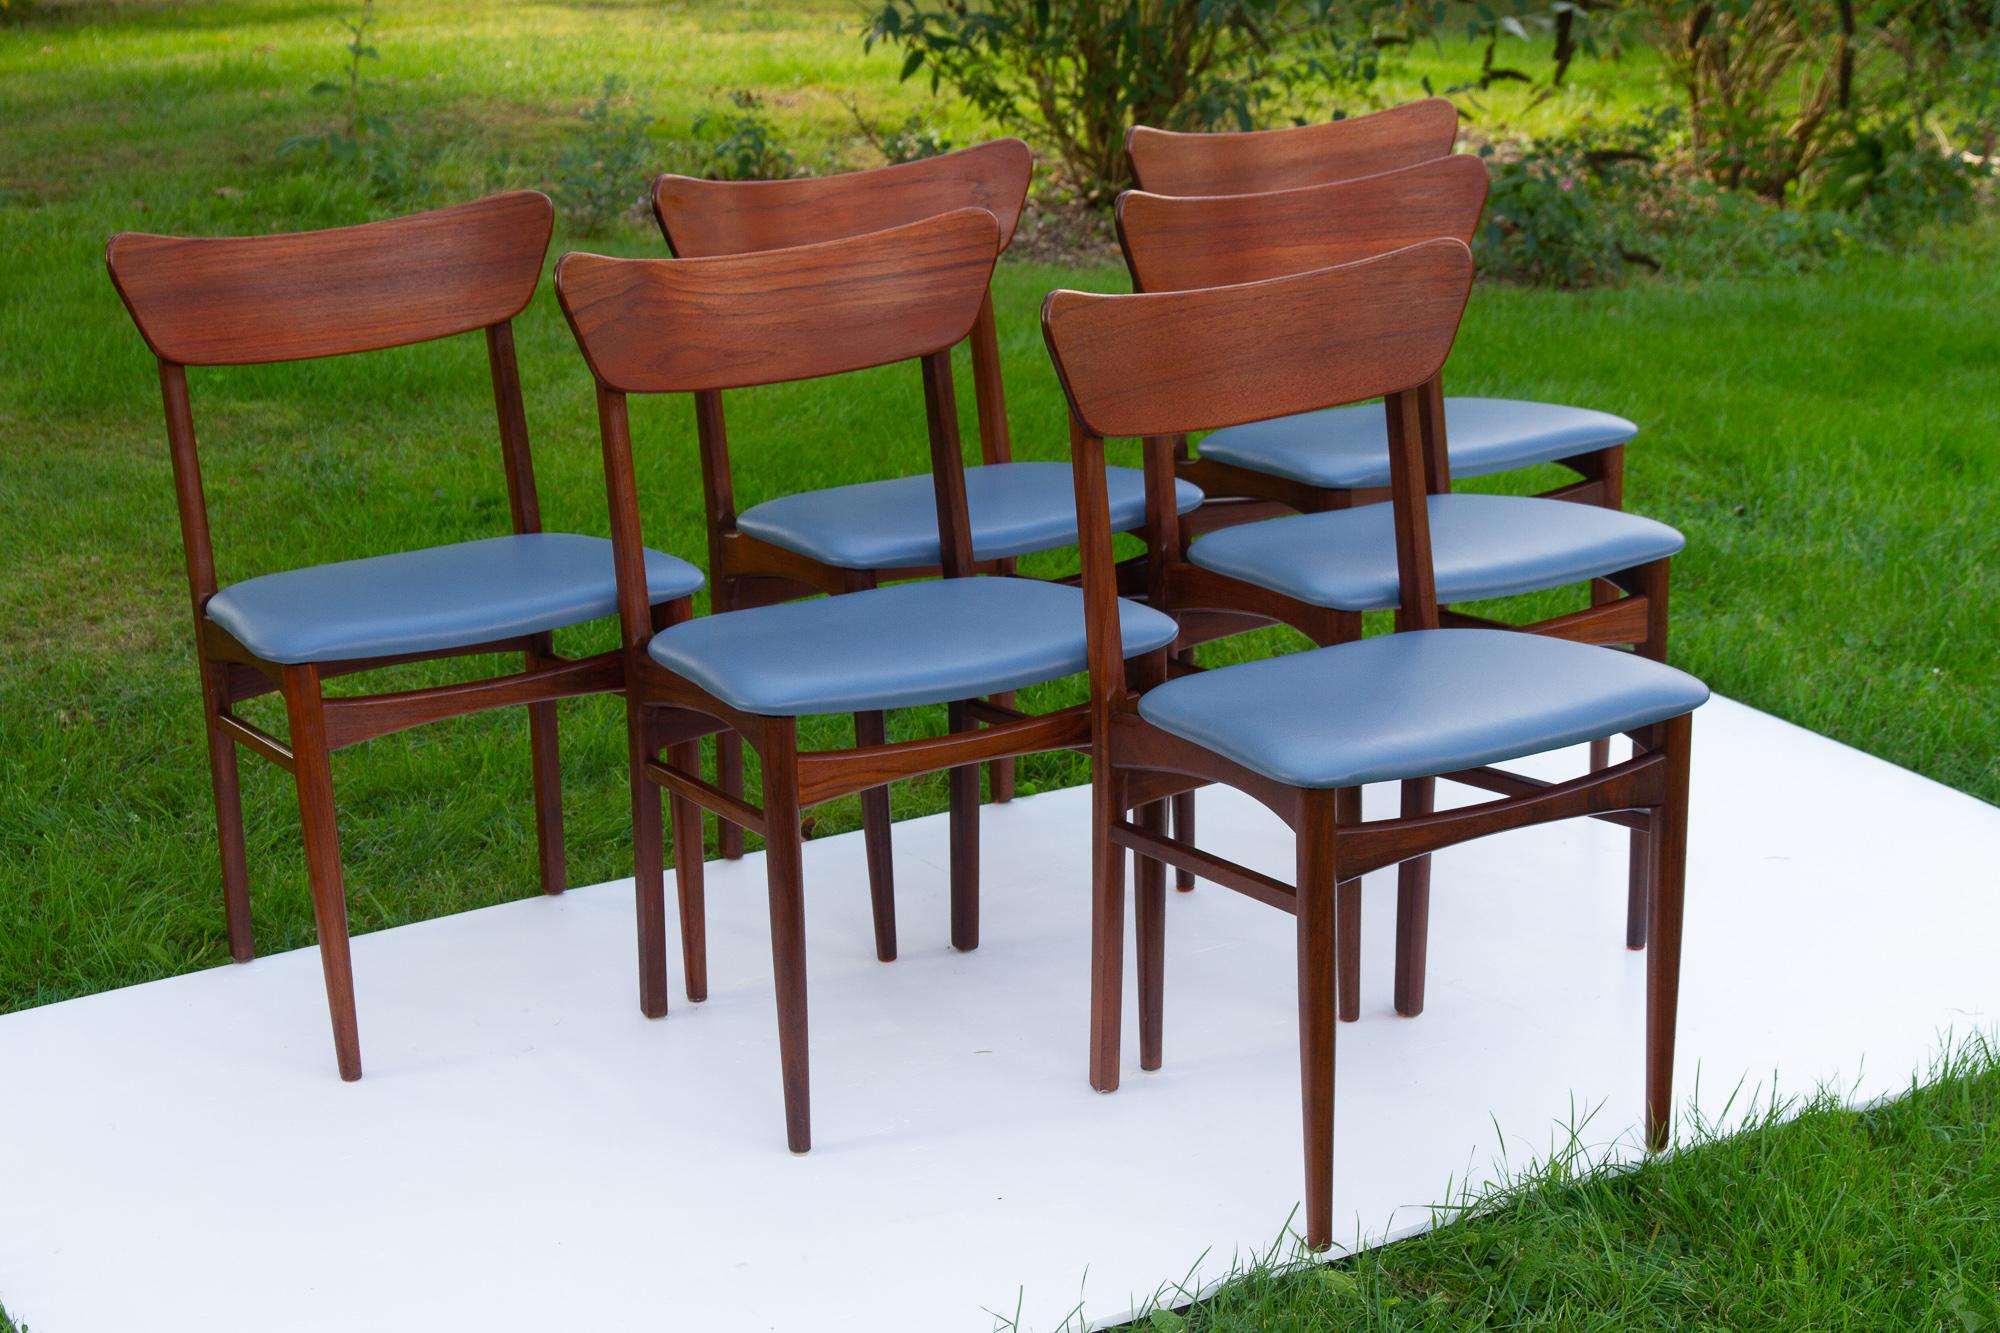 Vintage Danish Teak dining chairs 1960s, Set of 6
Ensemble de six chaises de salle à manger danoises modernes scandinaves avec revêtement en cuir bleu acier/gris. Cadre en teck massif avec dossiers incurvés et pieds ronds effilés.
Chaise très